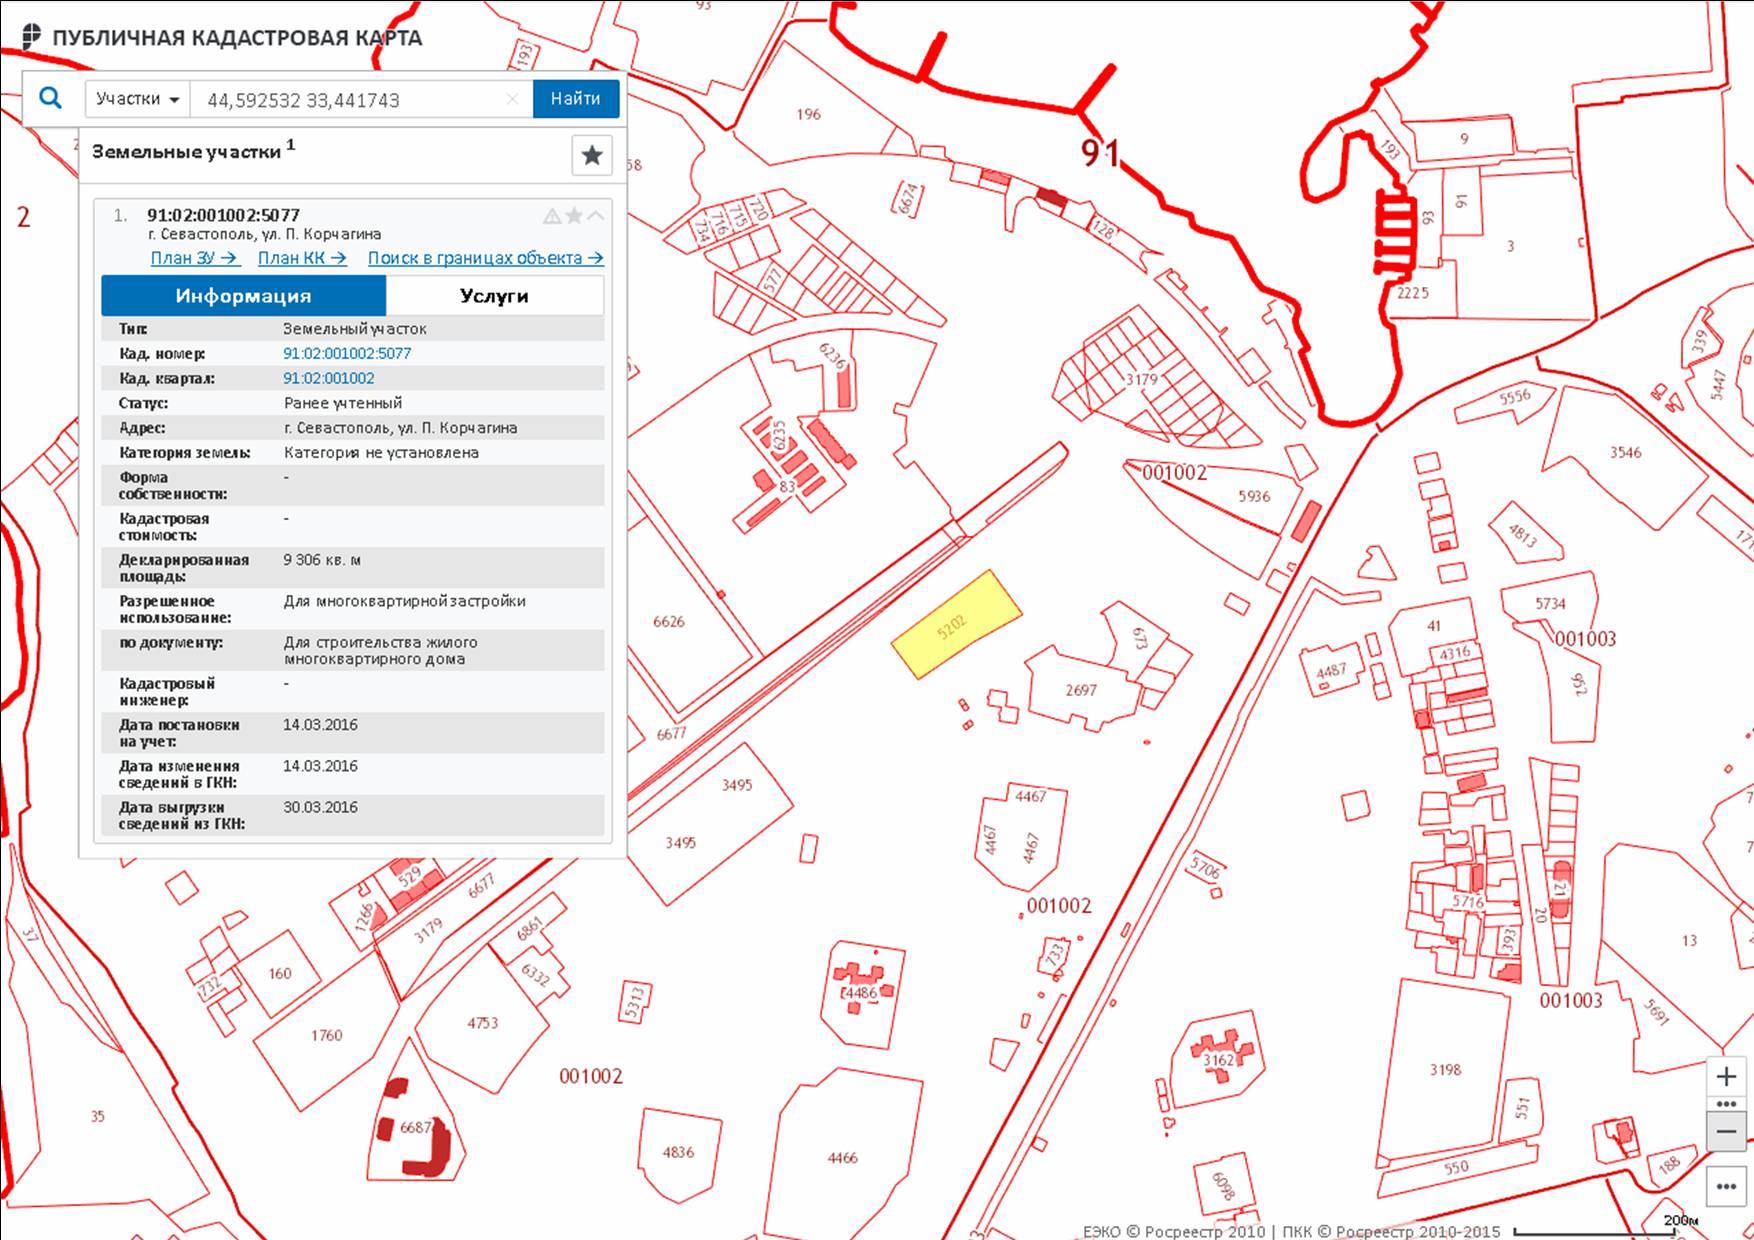 Pkk5 rosreestr ru - публичная кадастровая карта росреестра